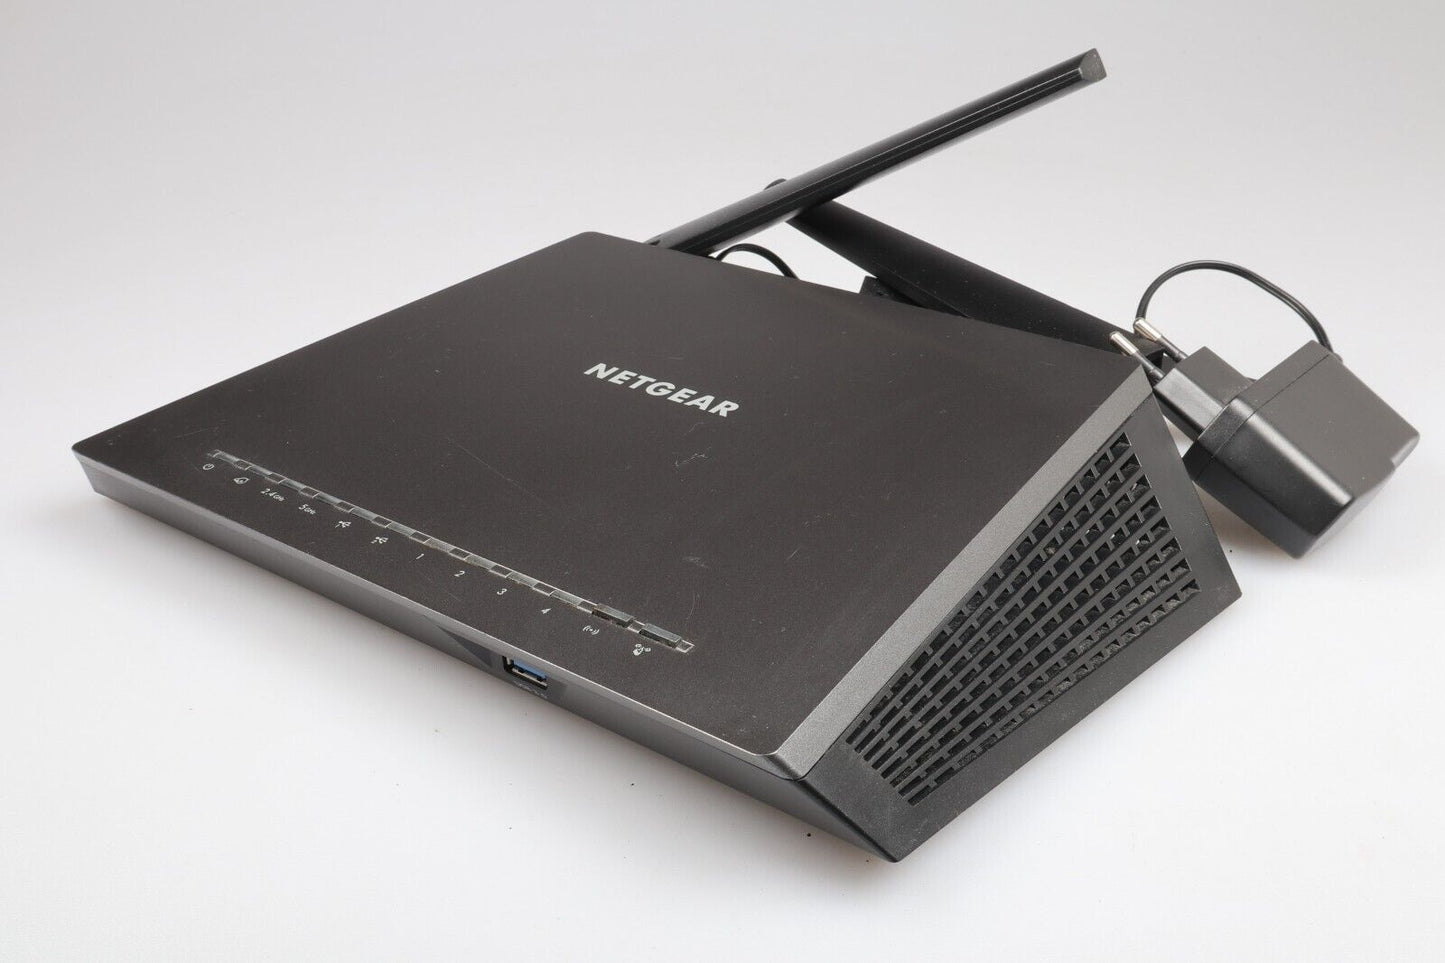 Netgear Nighthawk R7000 AC1900 | Smart WiFi Router